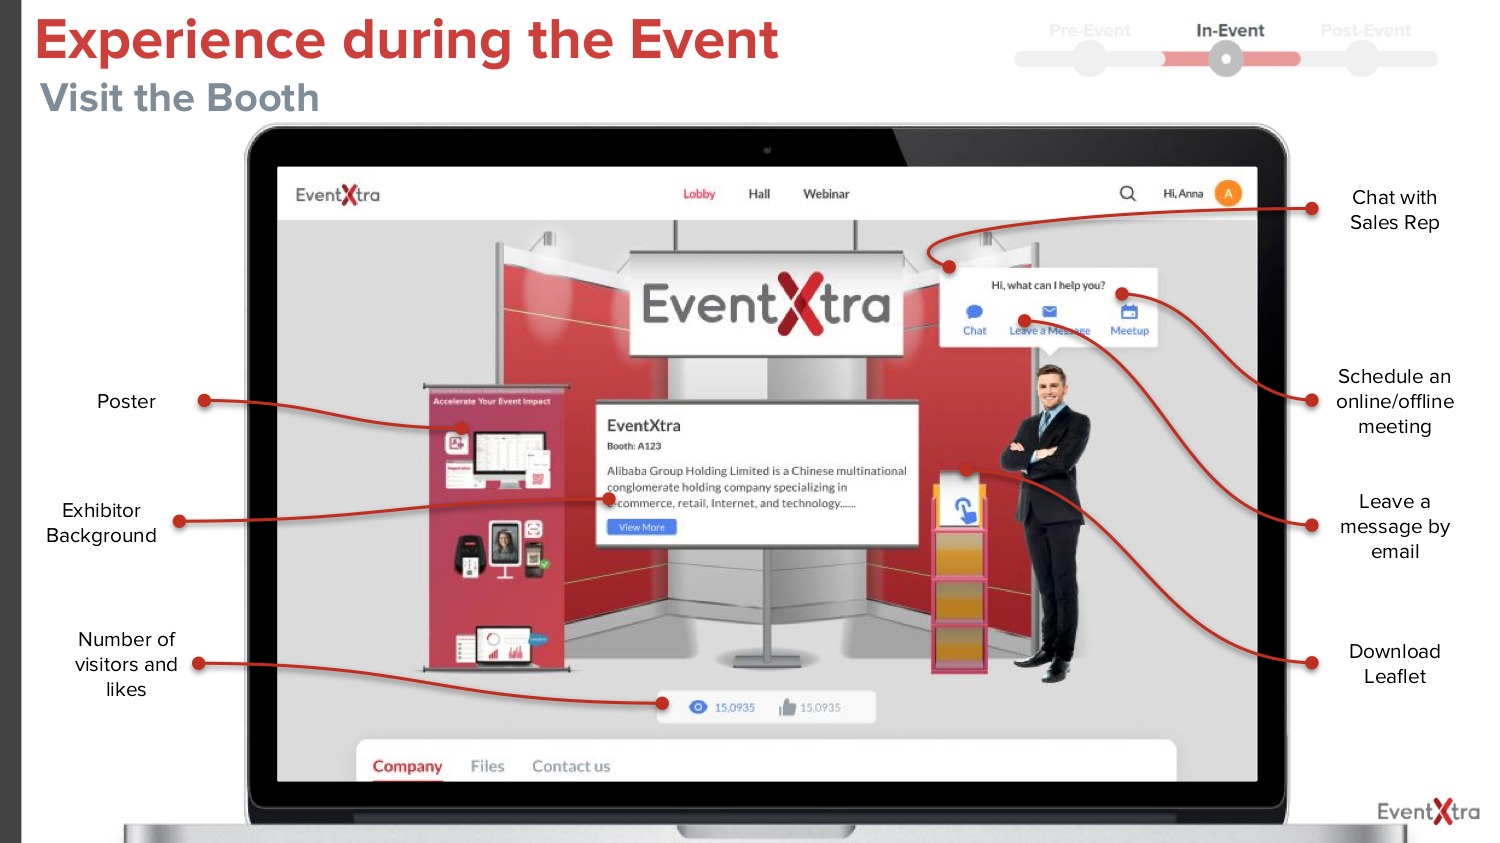 參加者可於虛擬攤位查閱企業資訊、與企業代表對話或預約會議等。（EventXtra圖片）